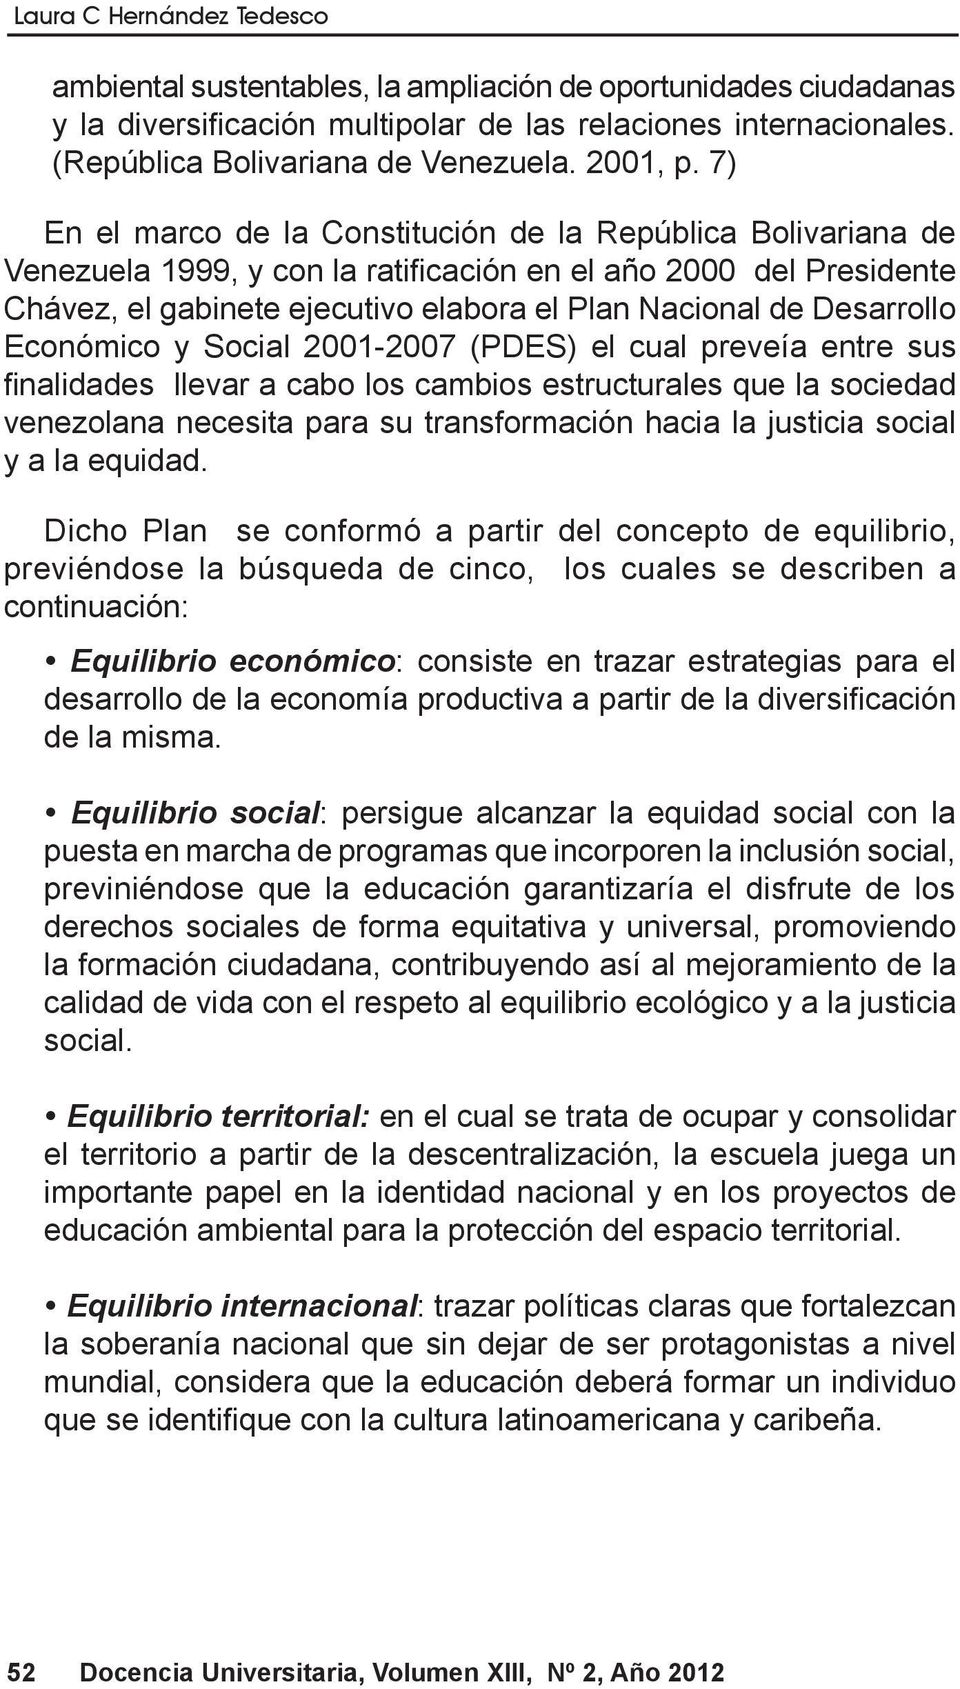 7) En el marco de la Constitución de la República Bolivariana de Venezuela 1999, y con la ratificación en el año 2000 del Presidente Chávez, el gabinete ejecutivo elabora el Plan Nacional de